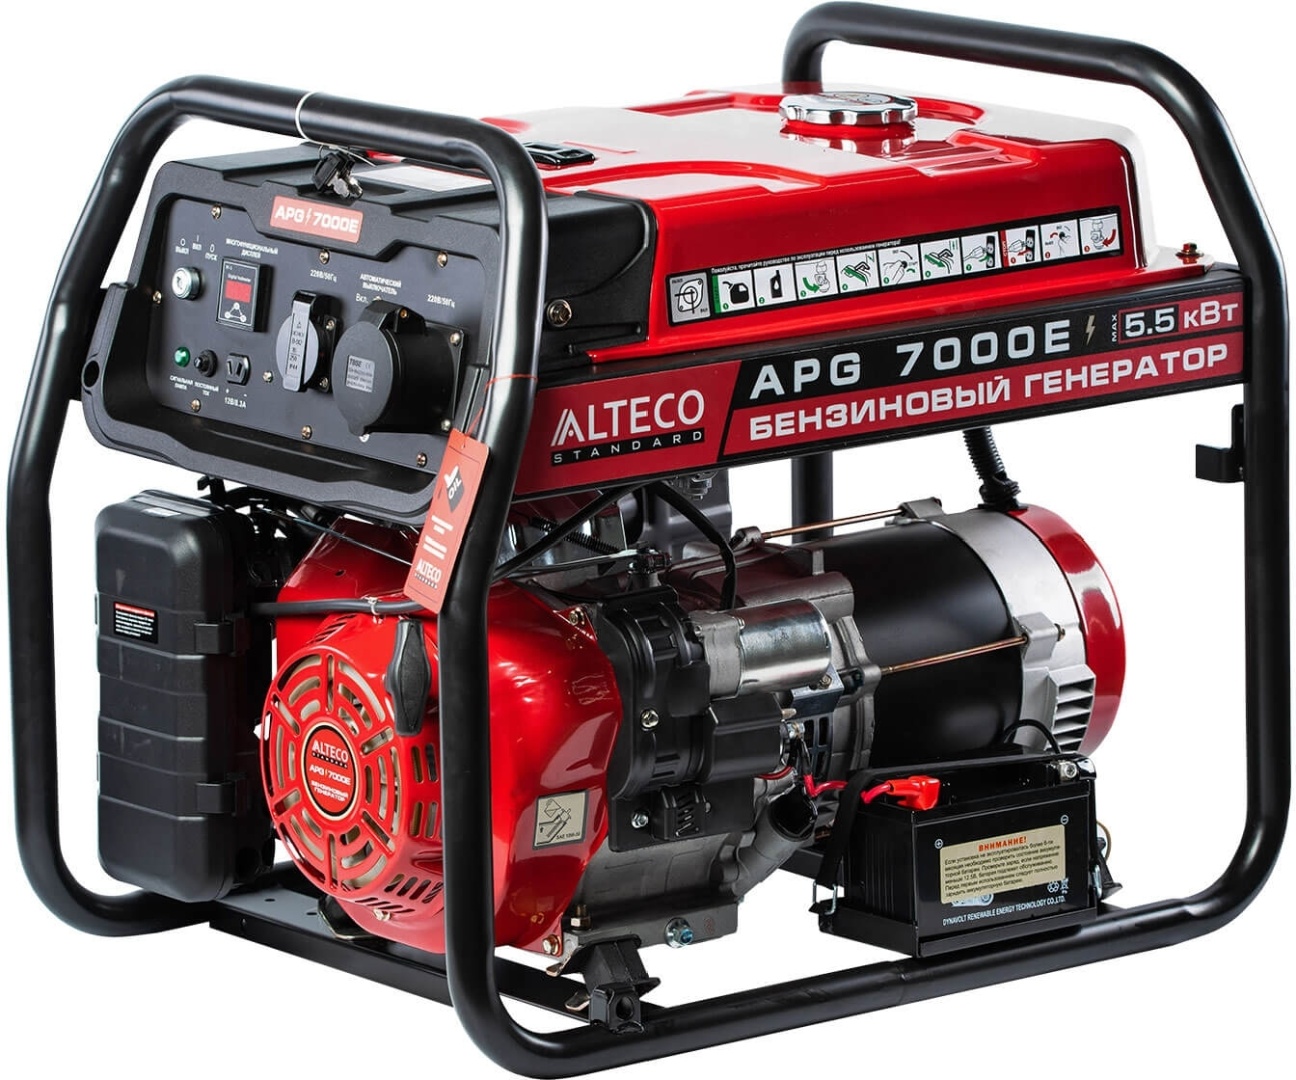 Купить Бензиновый генератор Apg 7000e N Alteco standart